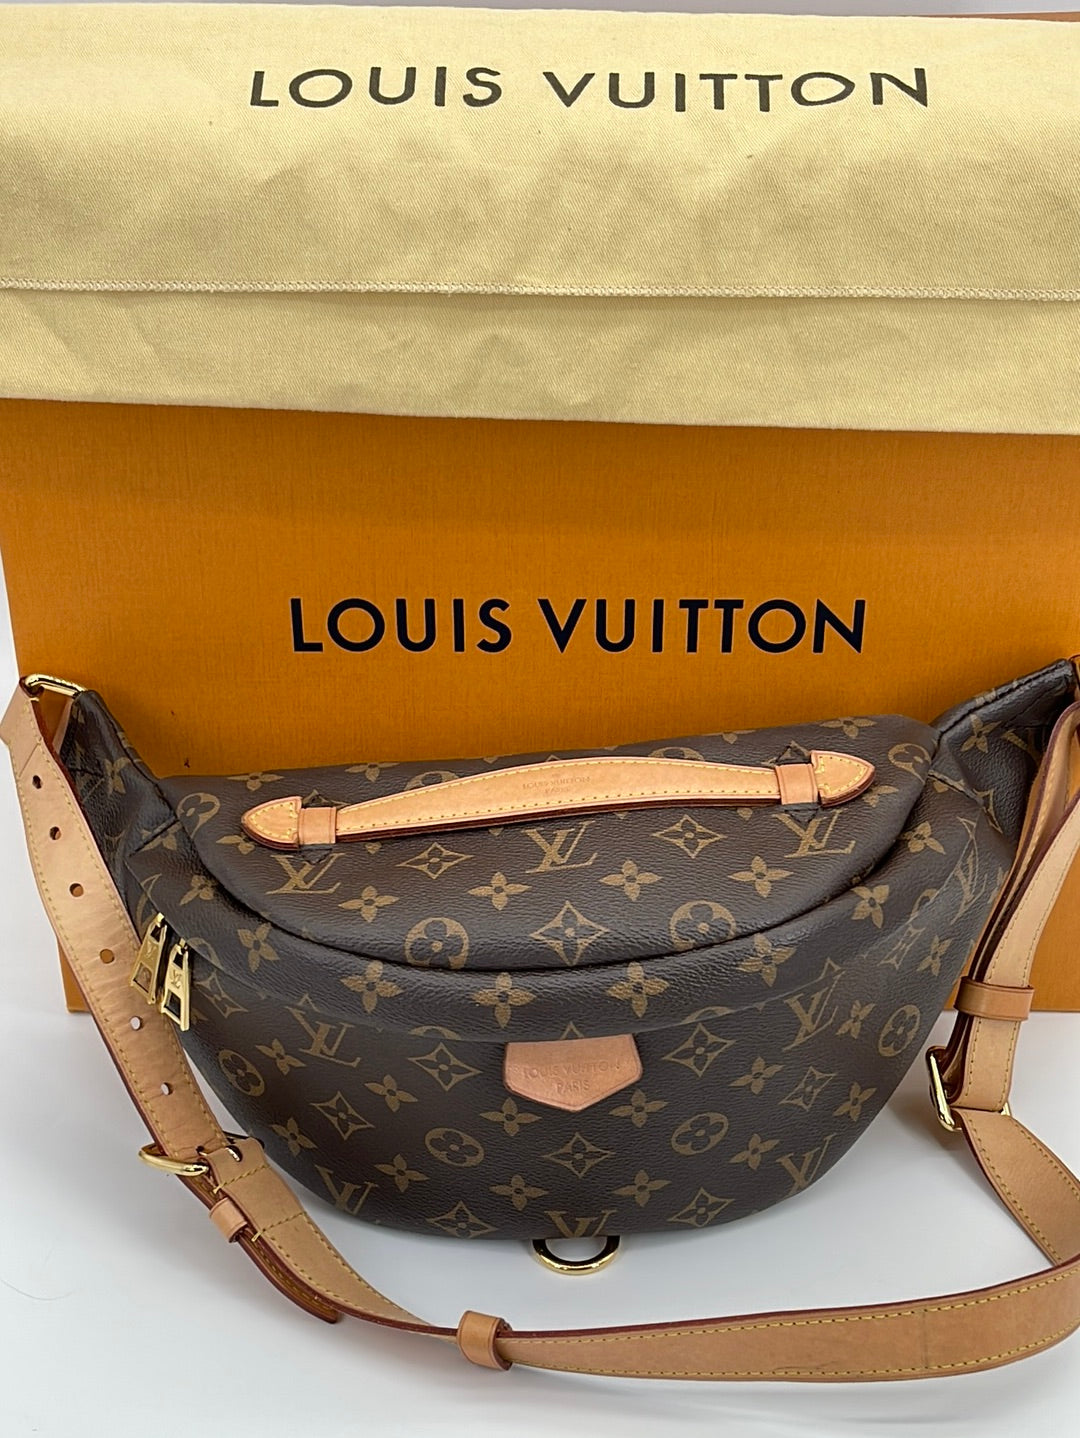 Louis Vuitton Monogram Canvas Bumbag, Louis Vuitton Handbags